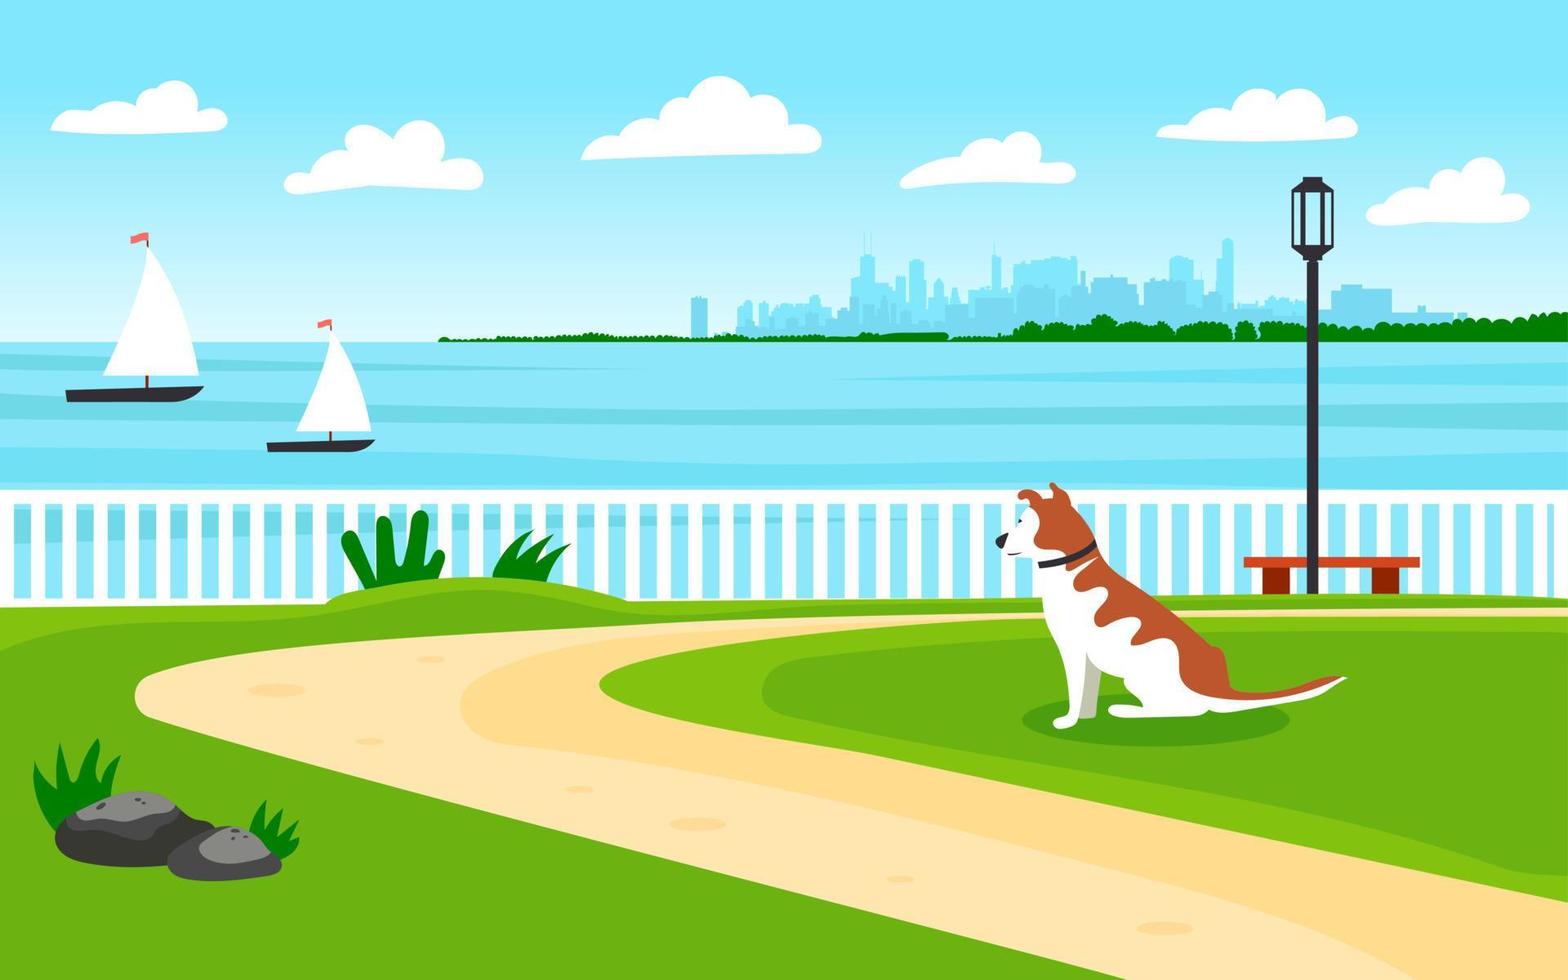 Landschaft am Meer. direkt am meer. Der Hund blickt in die Ferne zum Ufer. Blick auf die Metropole. Segelboote vektor